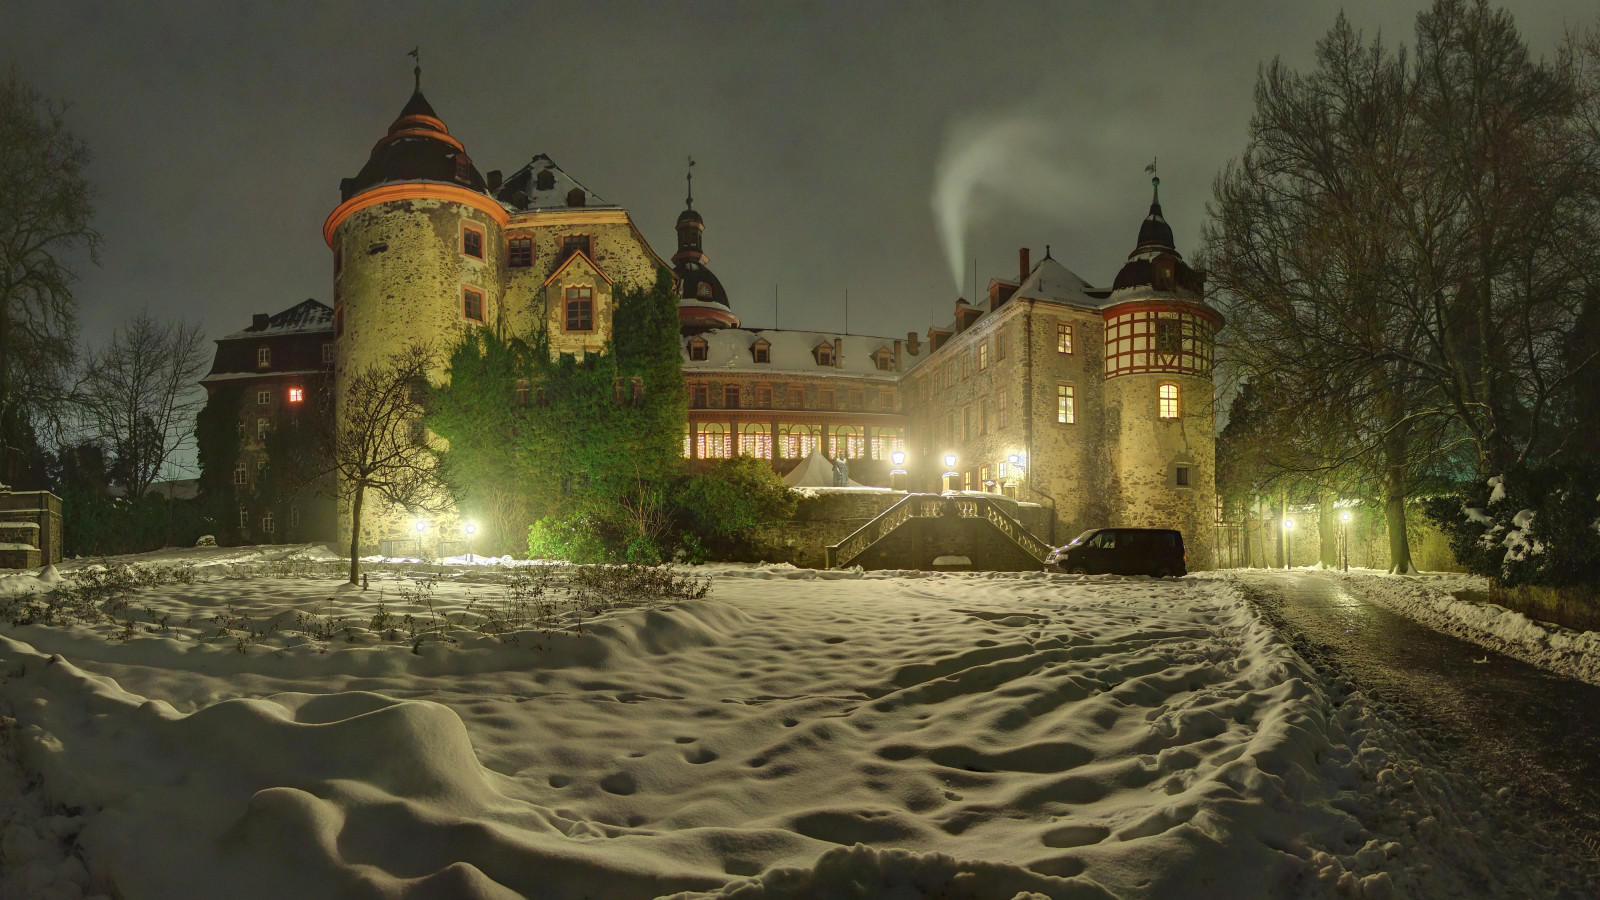 tuyết, mùa đông, cây, đèn, đêm, nước Đức, Lâu đài, tuyết